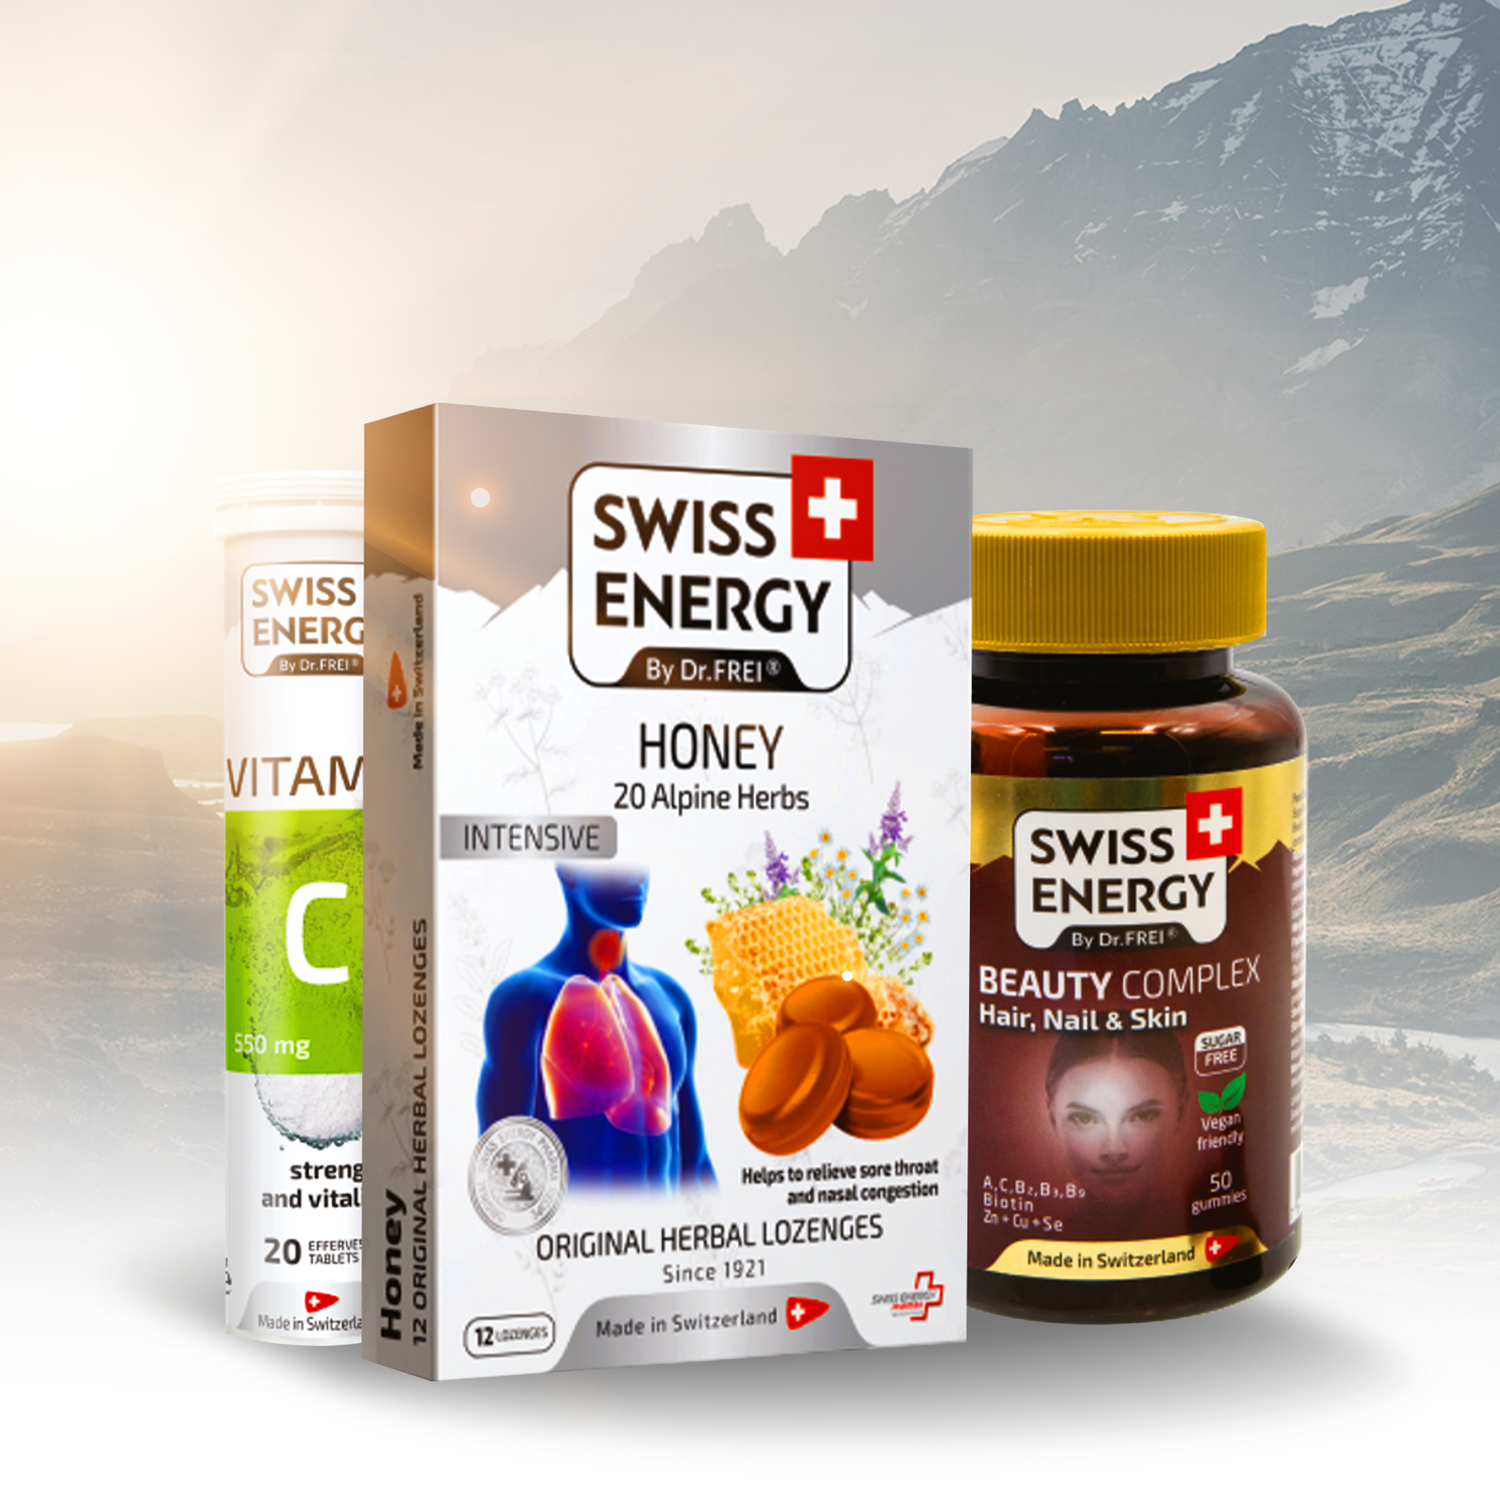 All Swiss Energy